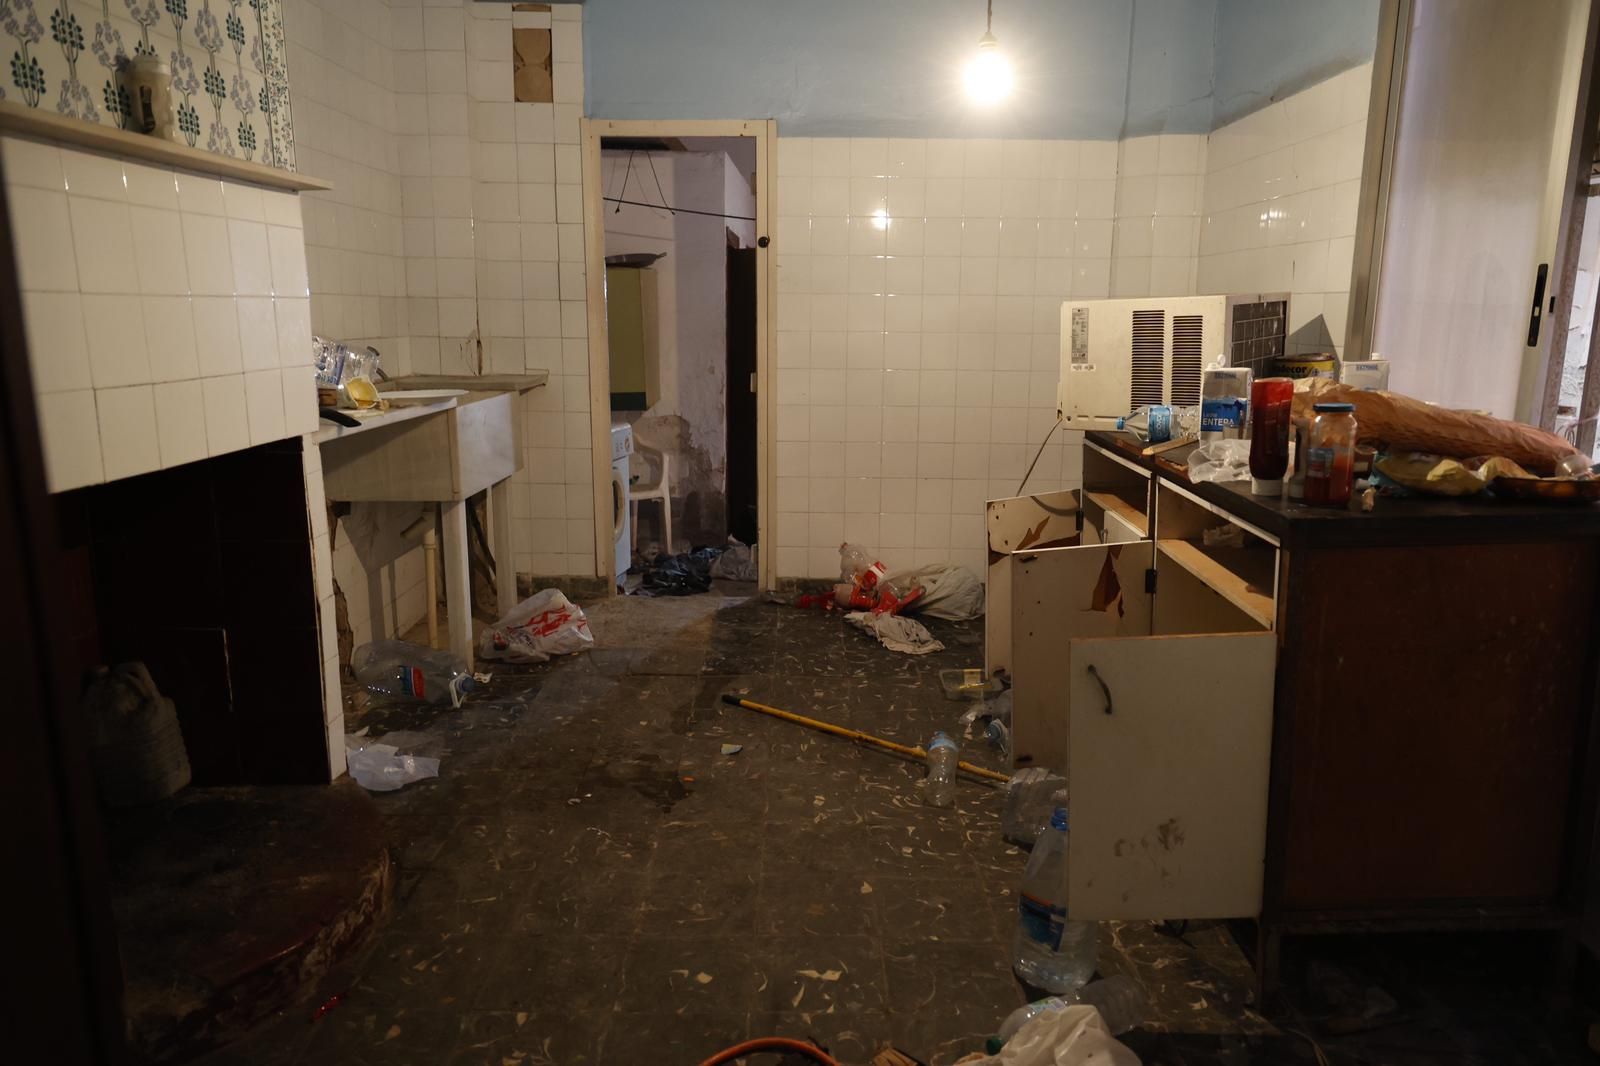 Más de 300 personas acuden a desokupar una vivienda en Castellar con fuerte presencia de la Guardia Civil